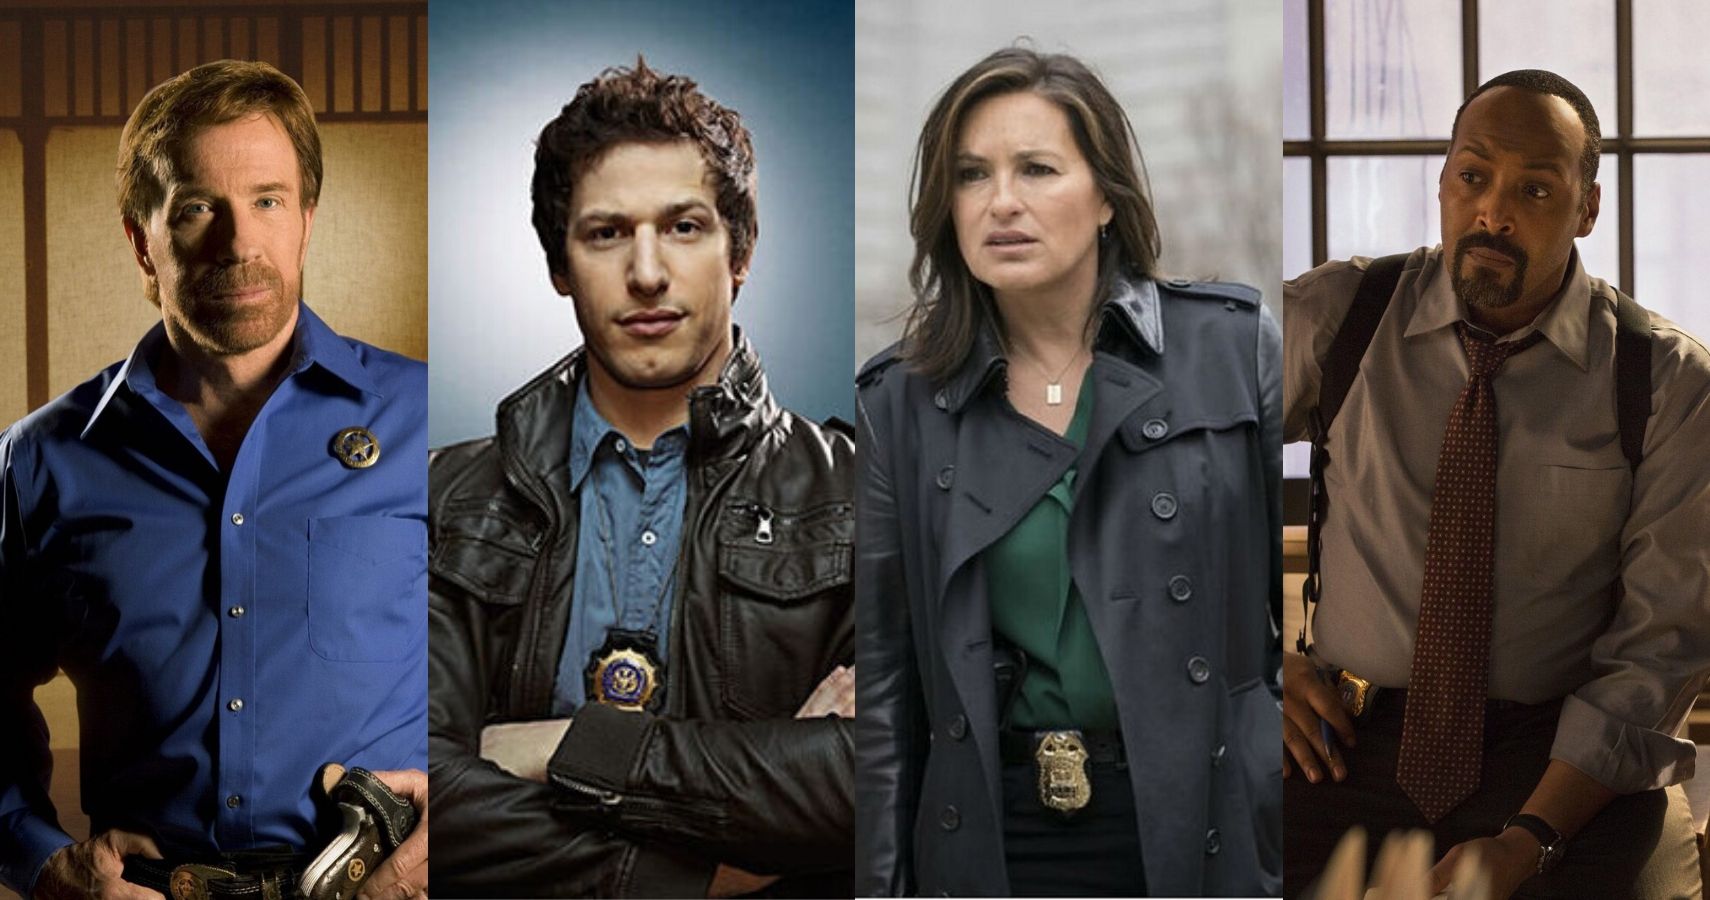 10 Best Cops In TV Shows